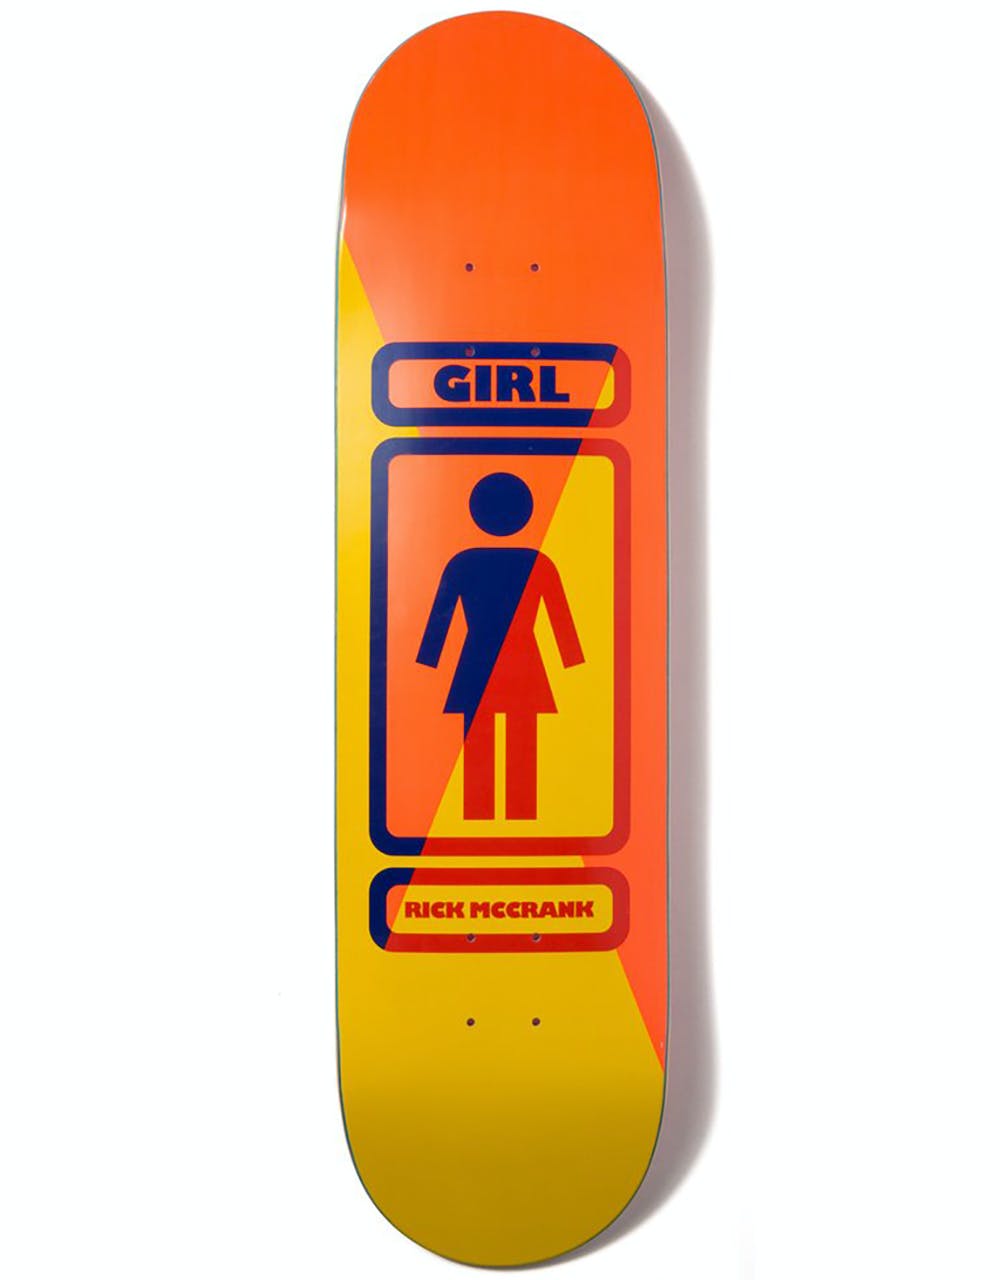 Girl McCrank 93 Til Skateboard Deck - 8.375"